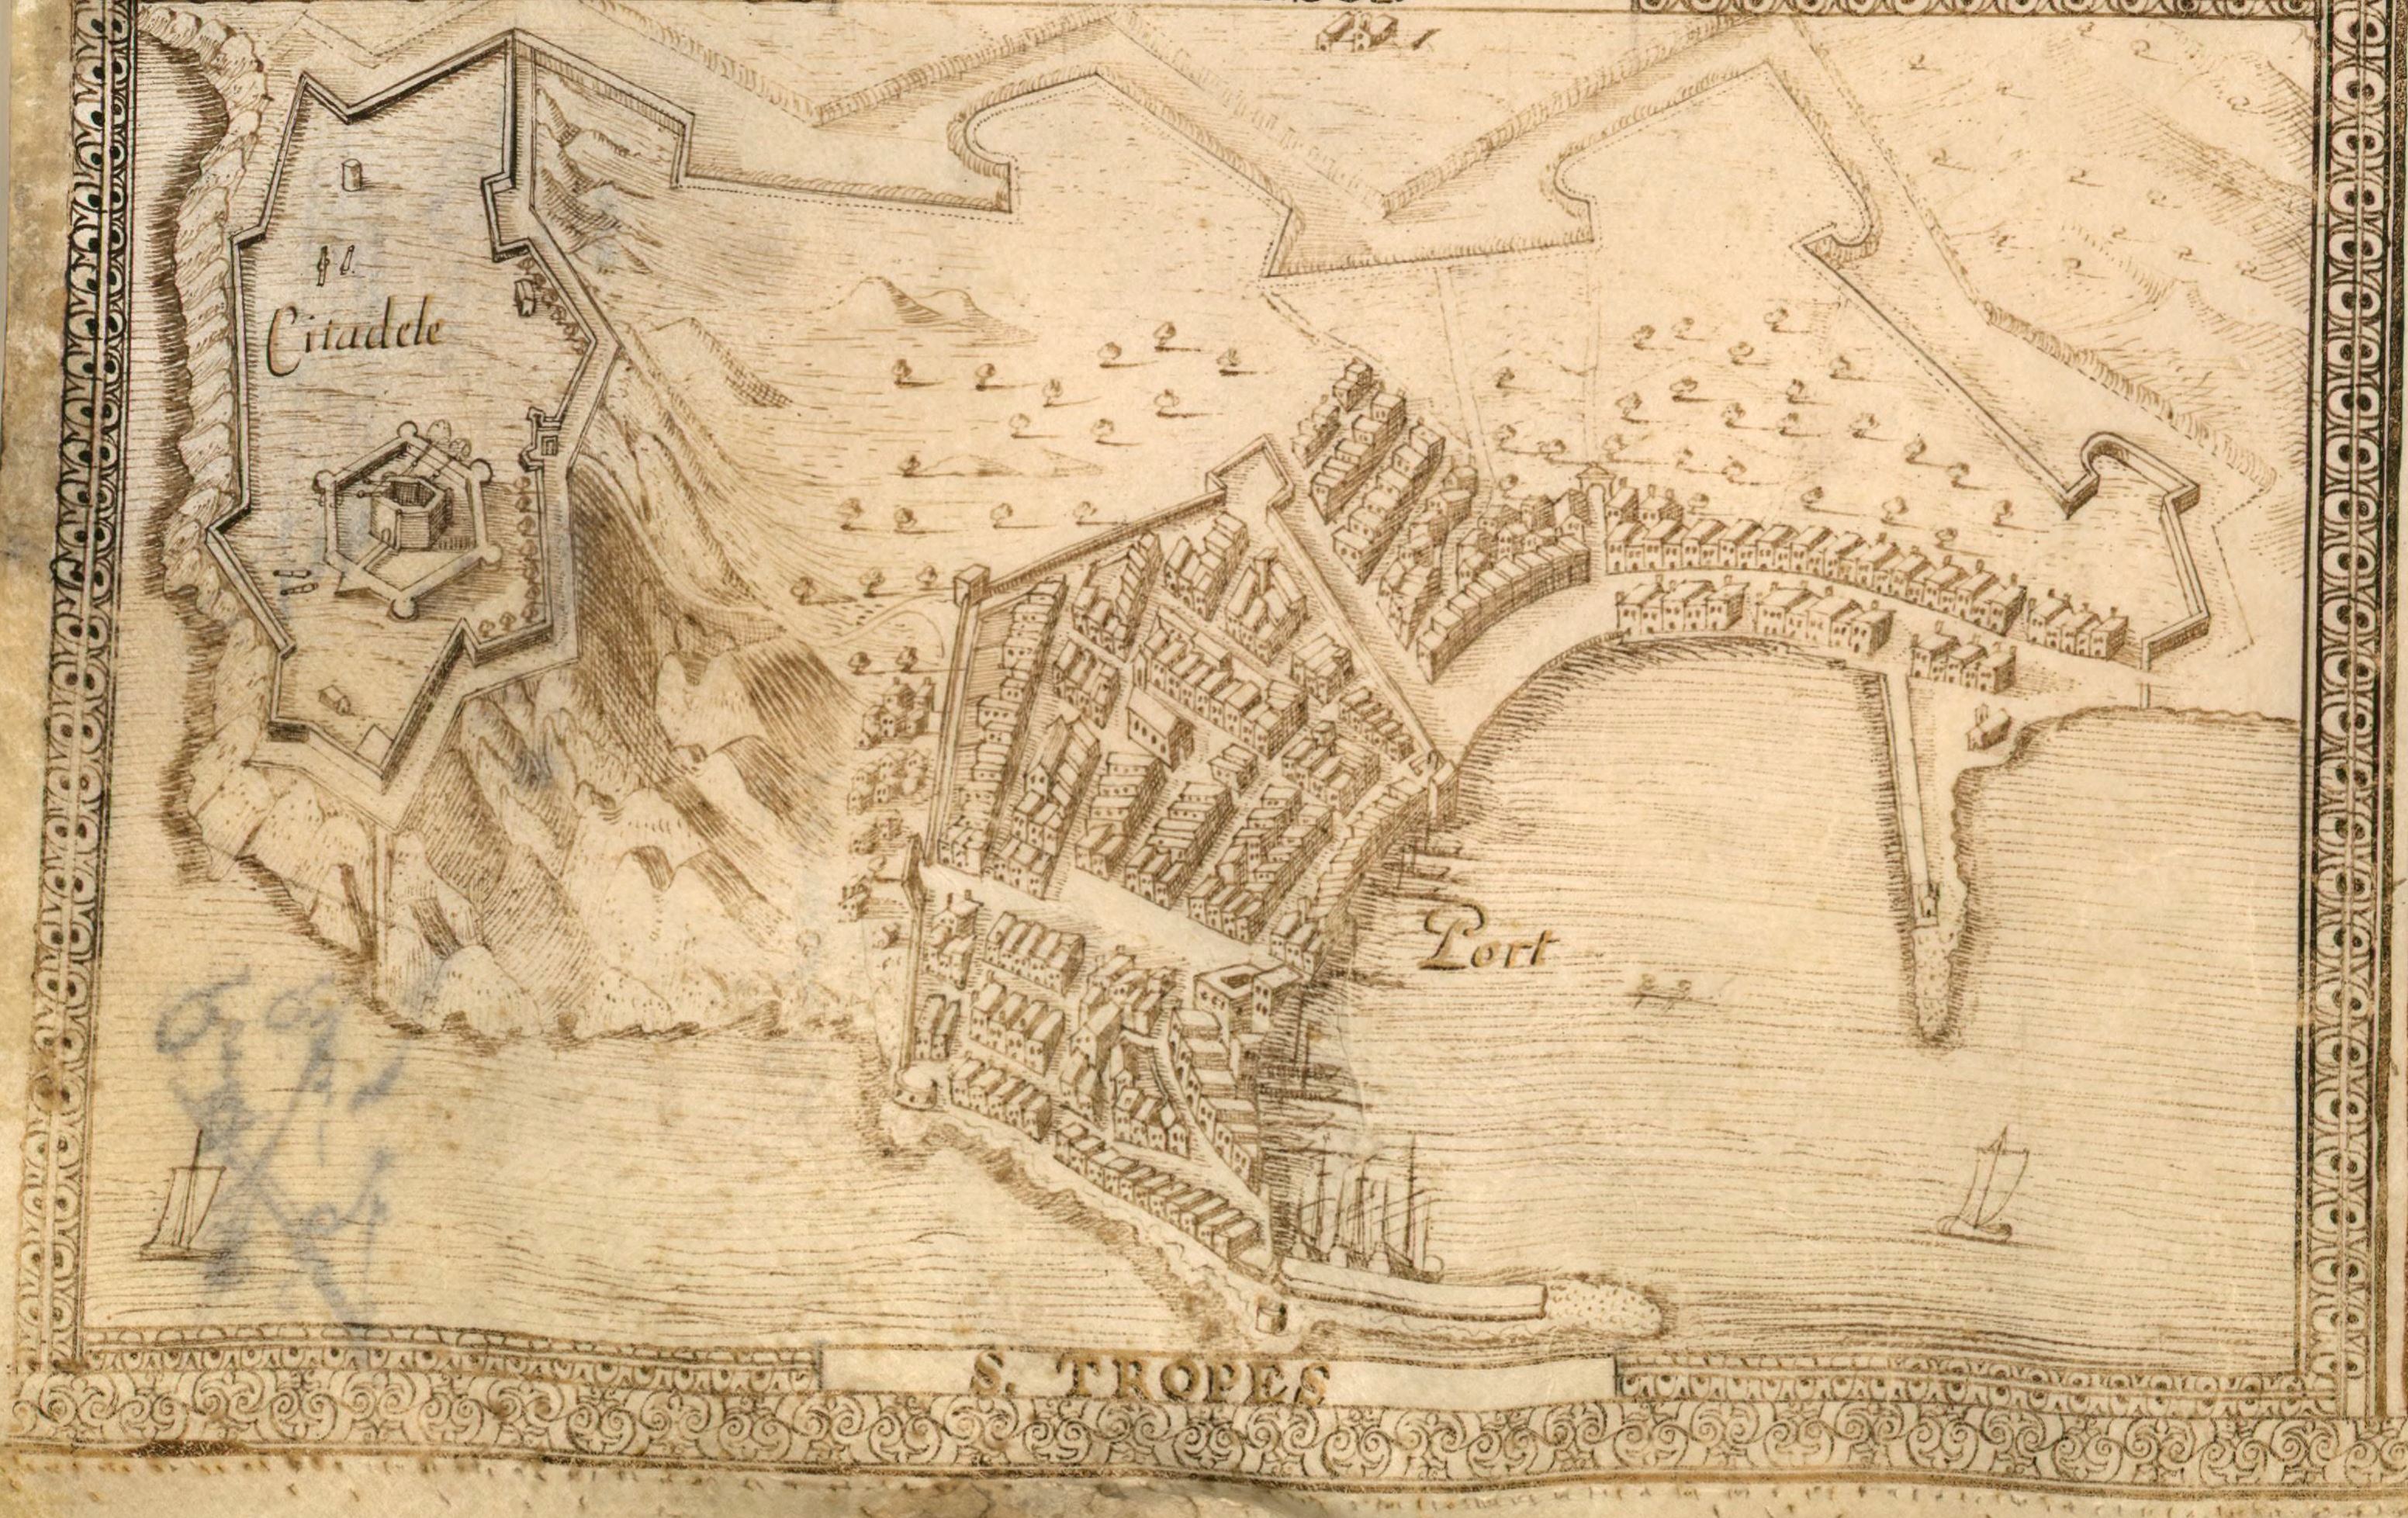 Vues perspectives de La Seine, Tollon, Hieres, breganson, Saint-Tropes, Freiuls, Saint-Rapheau, Canes, Saint-Honoré, Antibo 1631. Détail : Saint-Tropez.